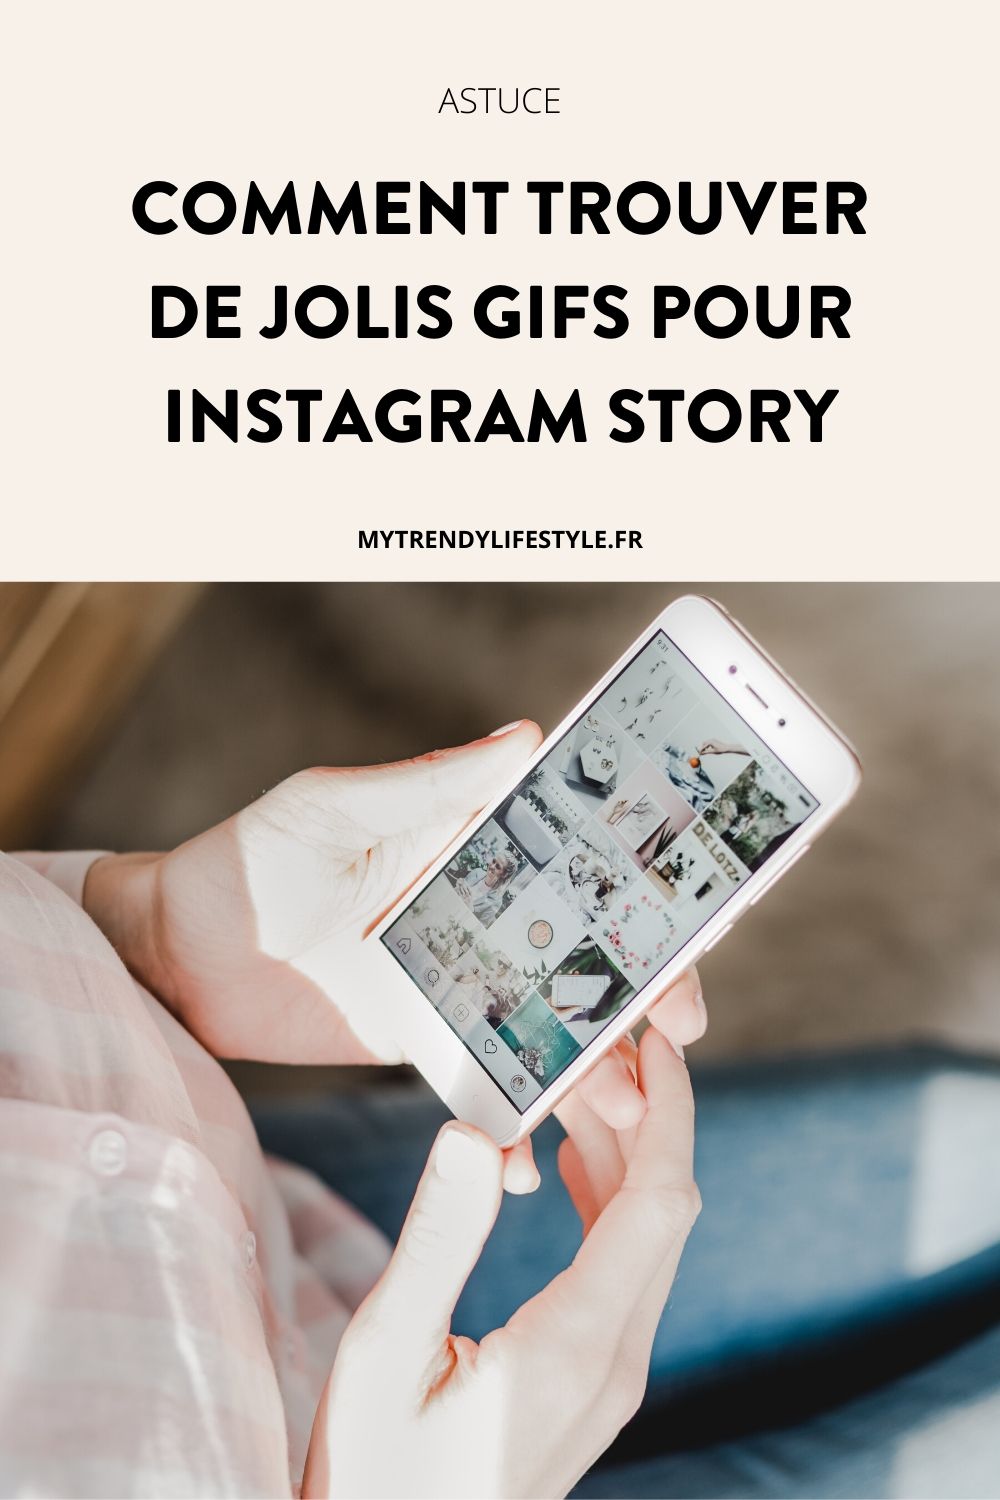 Découvrez dans cet article comment trouver de jolis gifs pour Instagram Story et rendre votre contenu plus attractif.